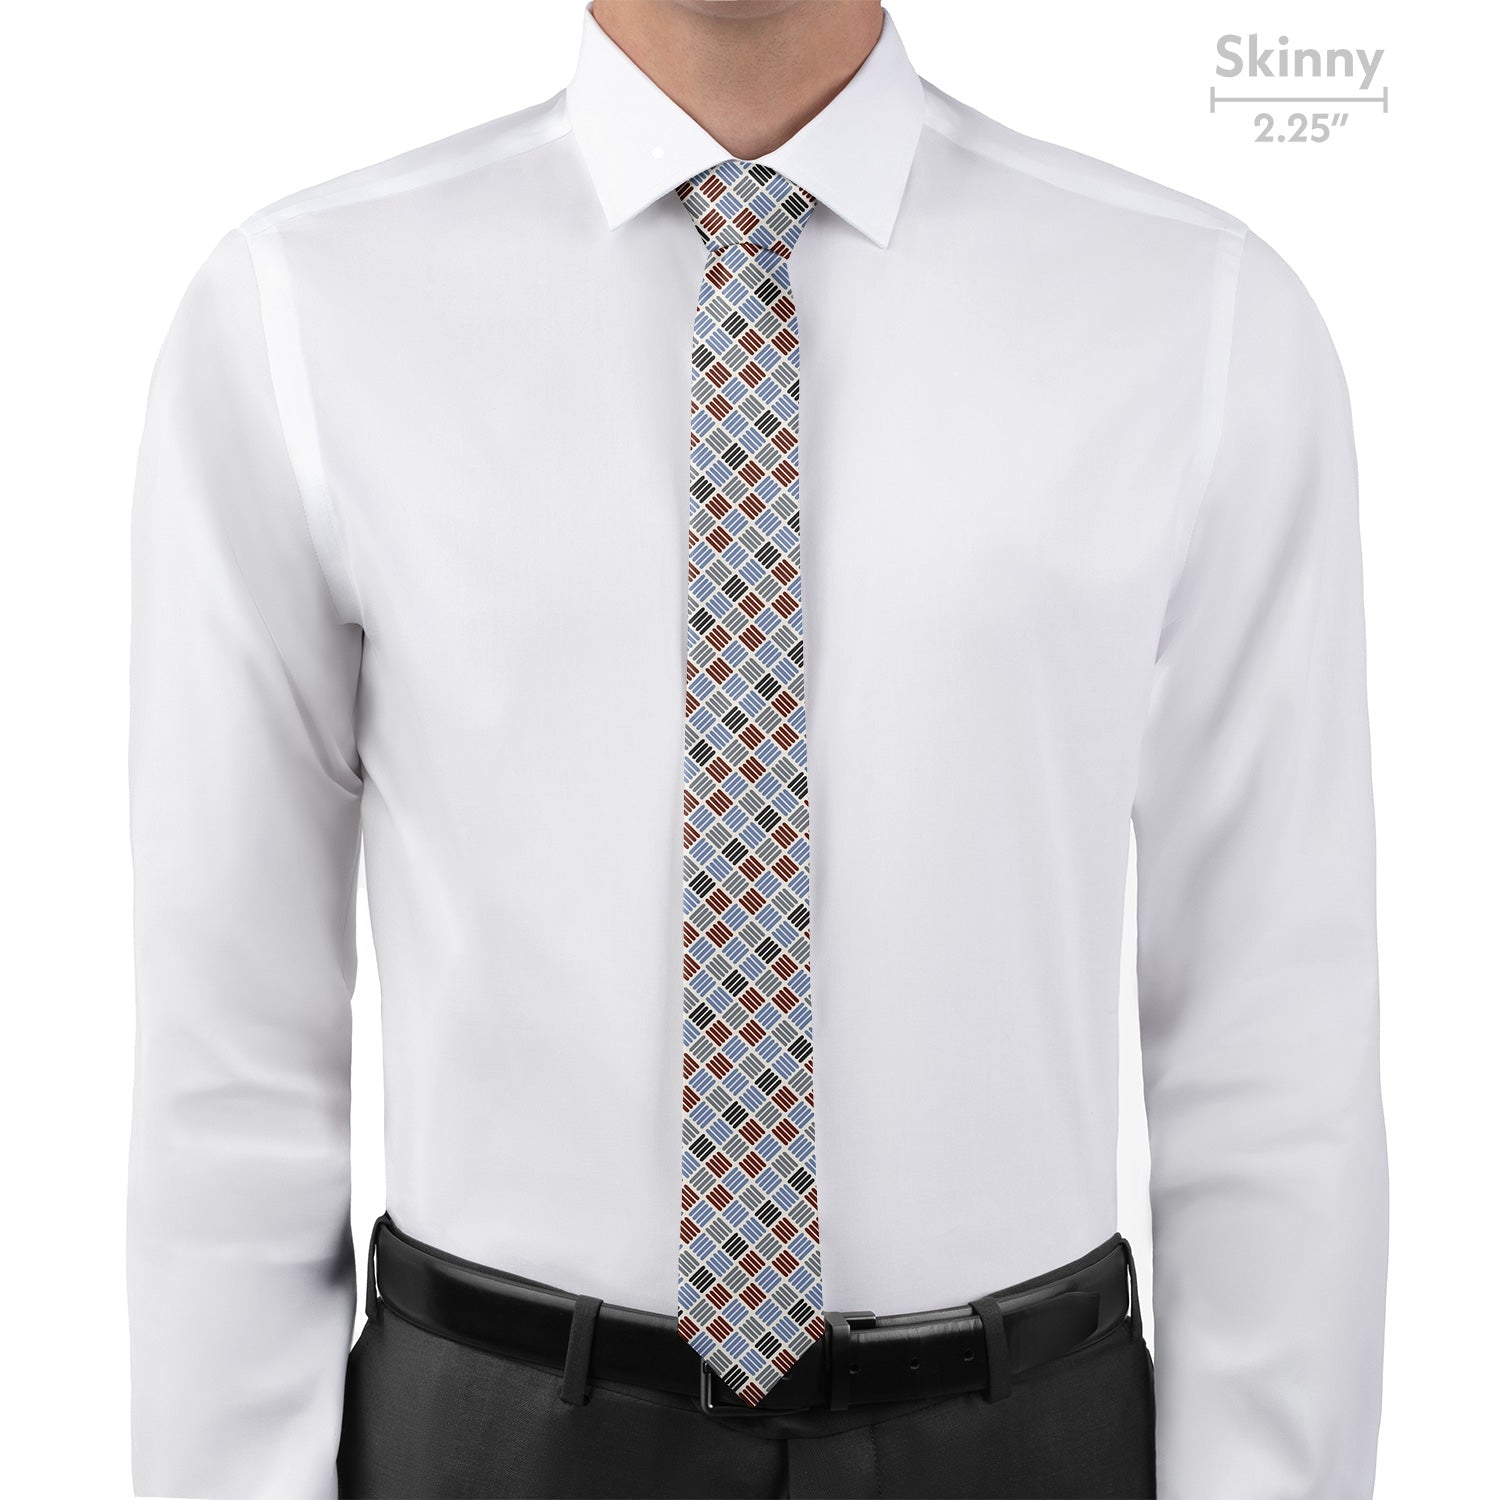 Crosshatch Plaid Necktie - Skinny - Knotty Tie Co.